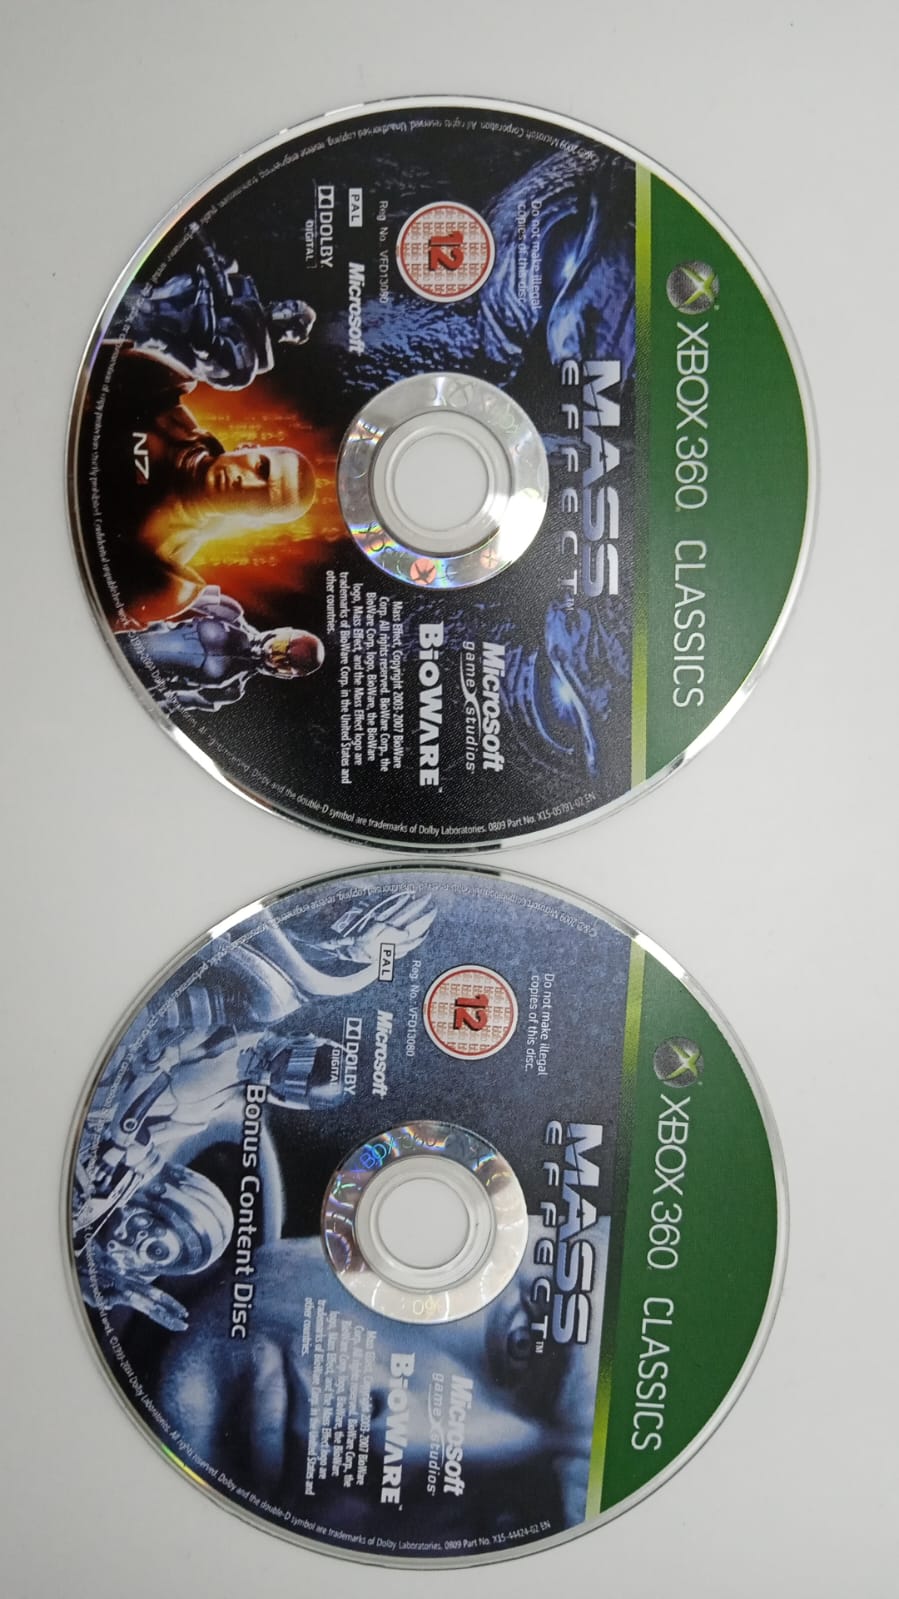 Joc XBOX 360 Mass Effect Classics - G